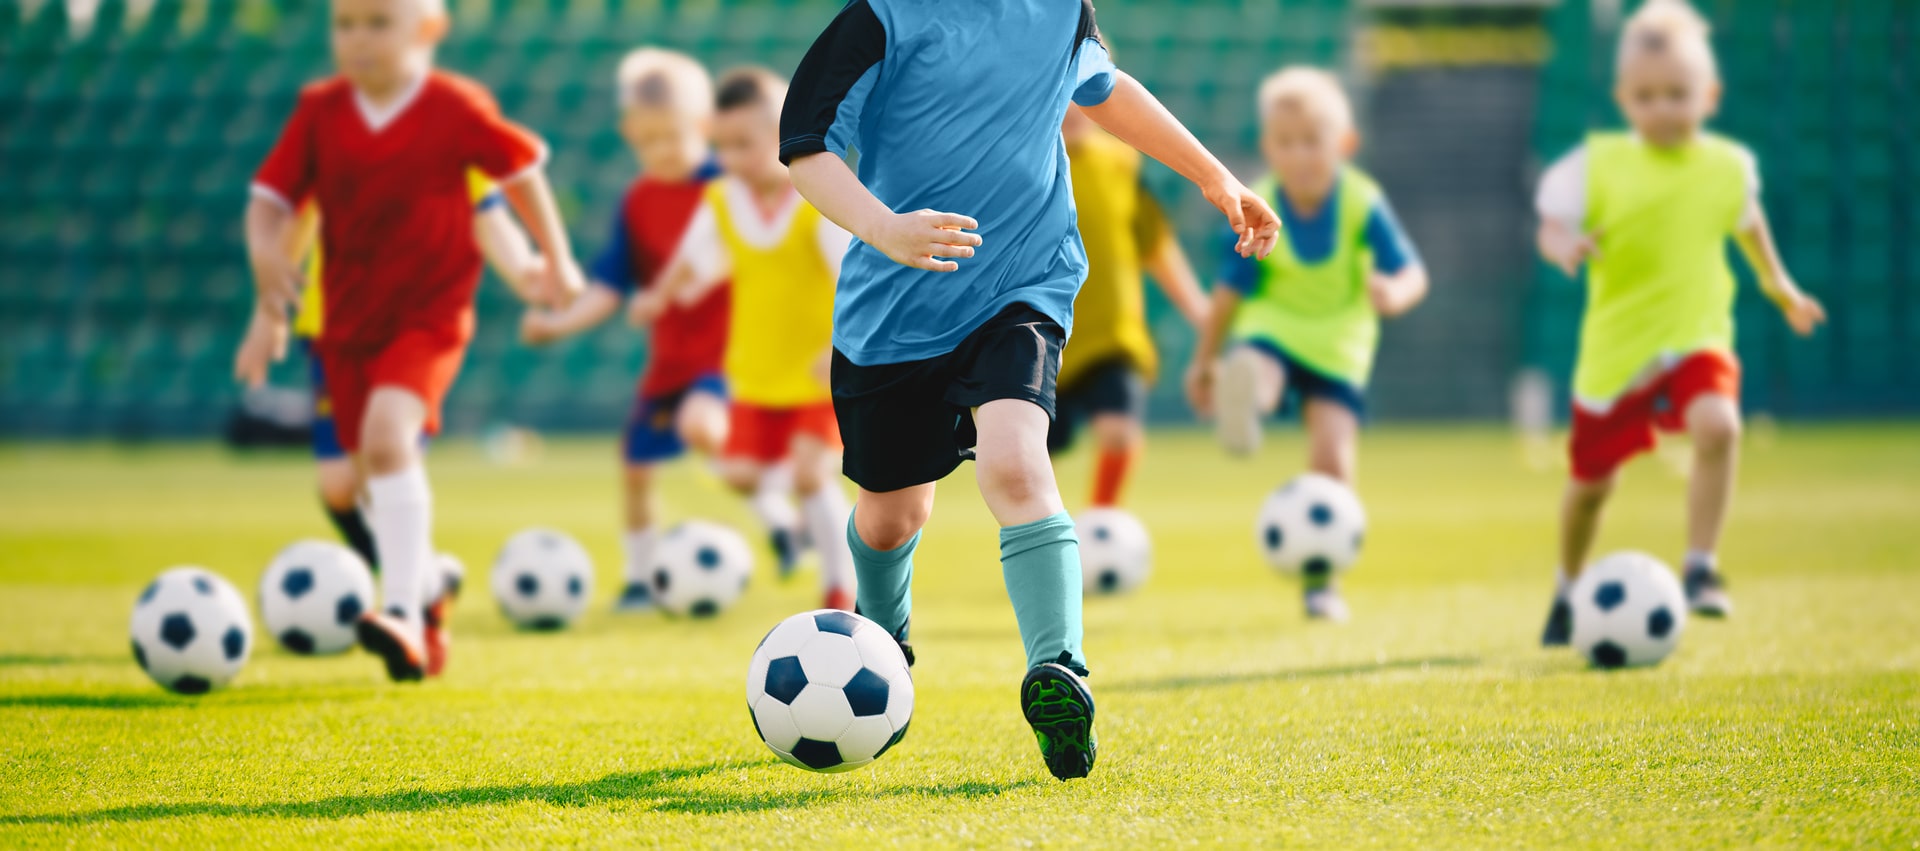 Bilde av små gutter, barn, sparker hver sin fotball, de har på seg vester i ulike farger - Råde IL - Idrettslag